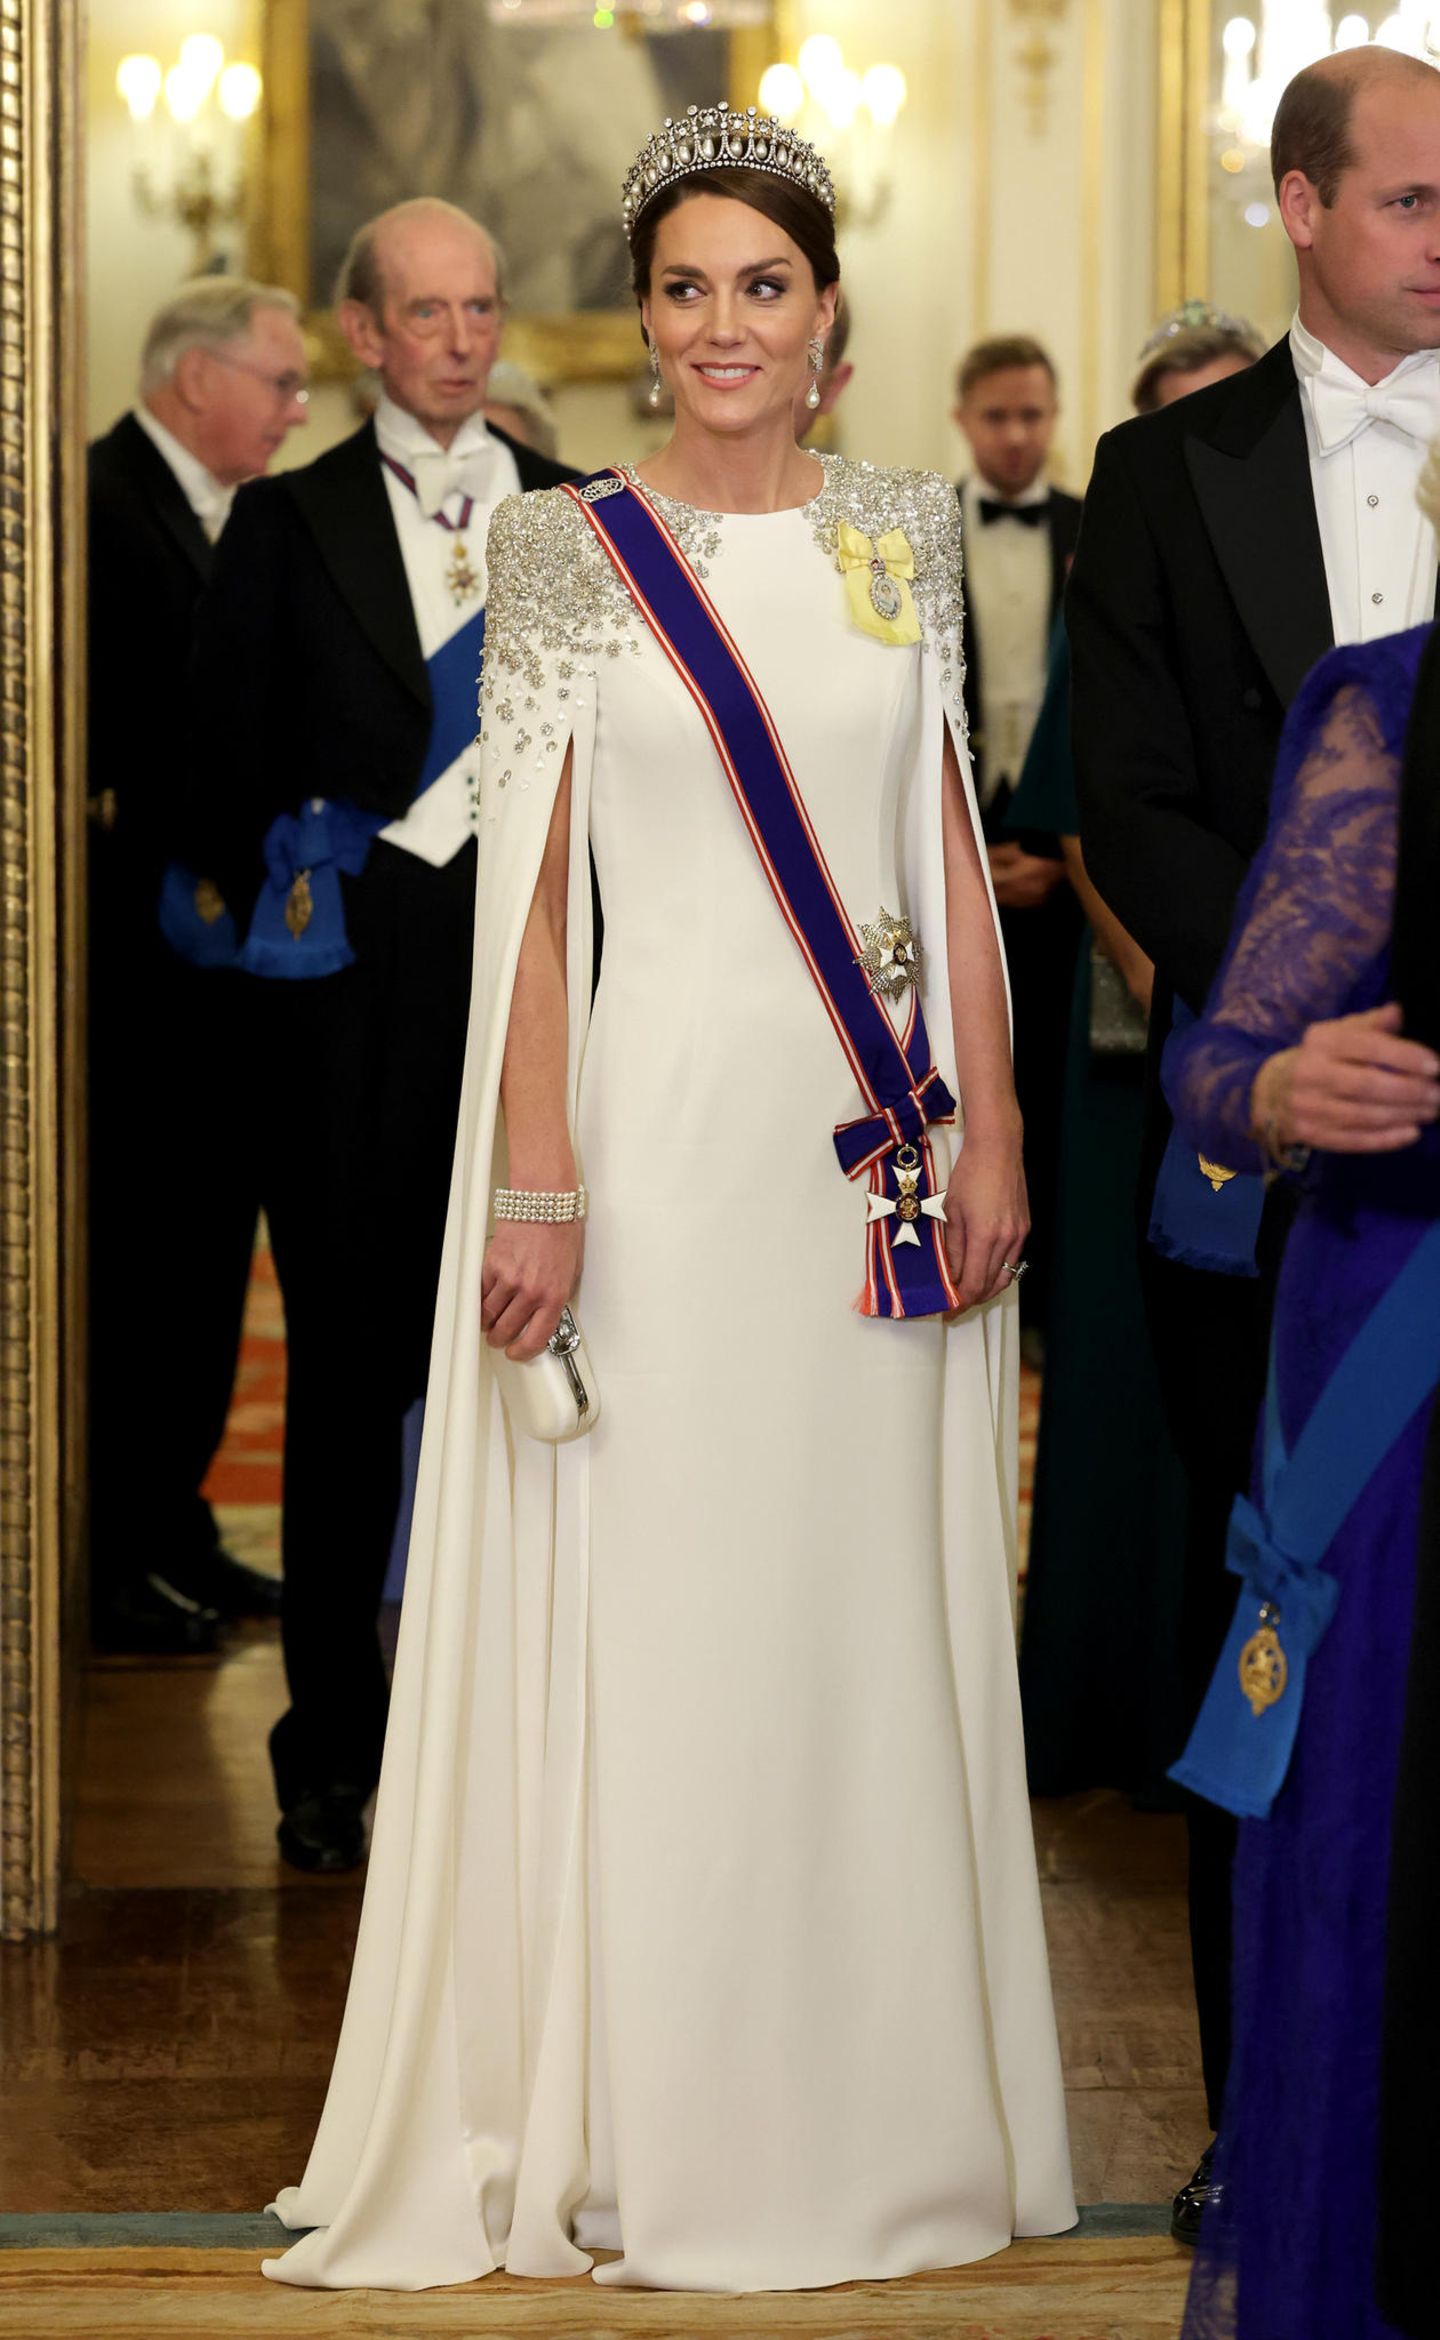 Beim ersten Staatsbankett während der Regentschaft von König Charles III. ist Catherine, Princess of Wales, der Hingucker des Abends. Die Wahl ihres Kleides und des Schmucks sind dabei besonders spannend. Denn, ihre bezaubernde Traumrobe in Weiß ist eigentlich ein Brautkleid. Es hat jedoch einen besonderen Kniff: An dem Kleid ihrer Lieblingsdesignerin Jenny Packham stechen besonders die aufwendige Schulterpartie mit Pailletten in Blumenform und die Cape-Ärmel hervor. Dazu wählt die Princess of Wales einen hochkarätigen Kopfschmuck: Die "Cambridge Lover's Knot" Tiara, welche ein Hochzeitsgeschenk für Prinzessin Diana war. Ihr luxuriöses Auftreten wird durch ein Armband von Queen Elizabeth II. ergänzt. 